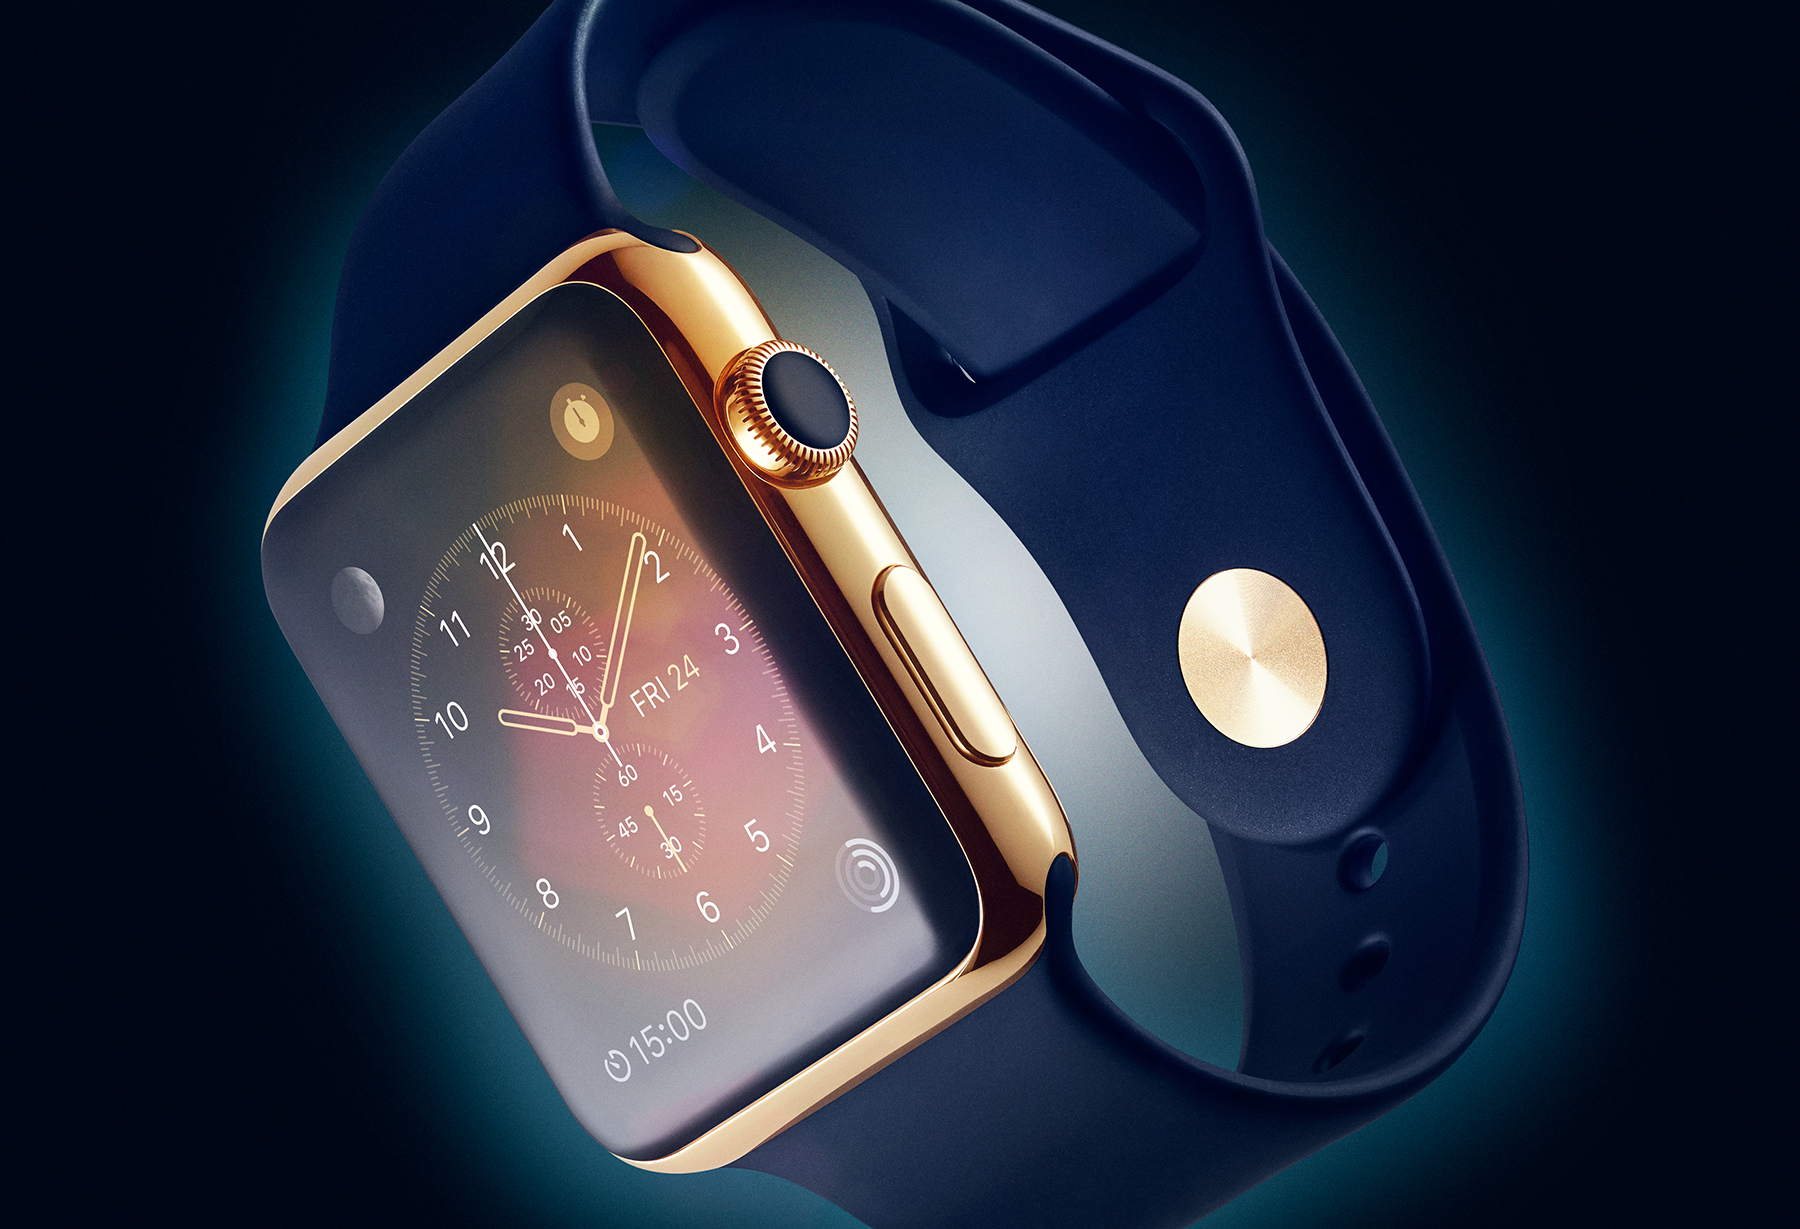 apple watch fond d'écran hd,gadget,produit,la technologie,téléphone portable,téléphone intelligent